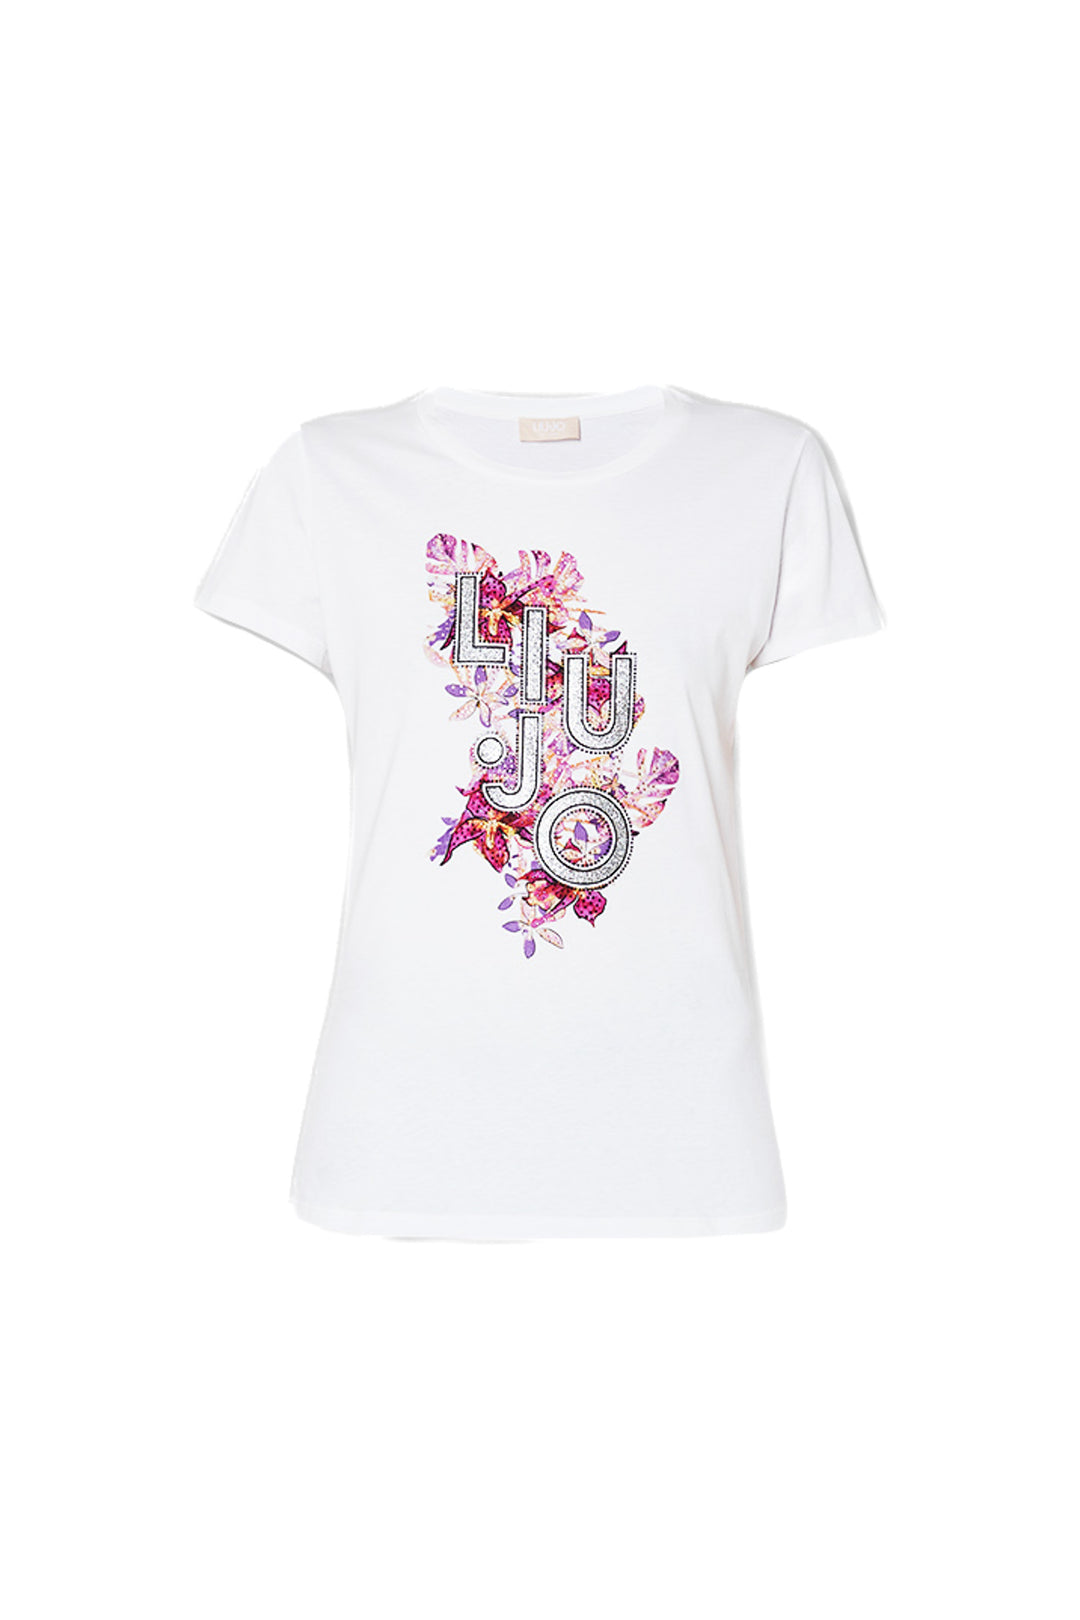 LIU JO T-shirt bianca ecosostenibile in cotone con logo a fiori - Mancinelli 1954